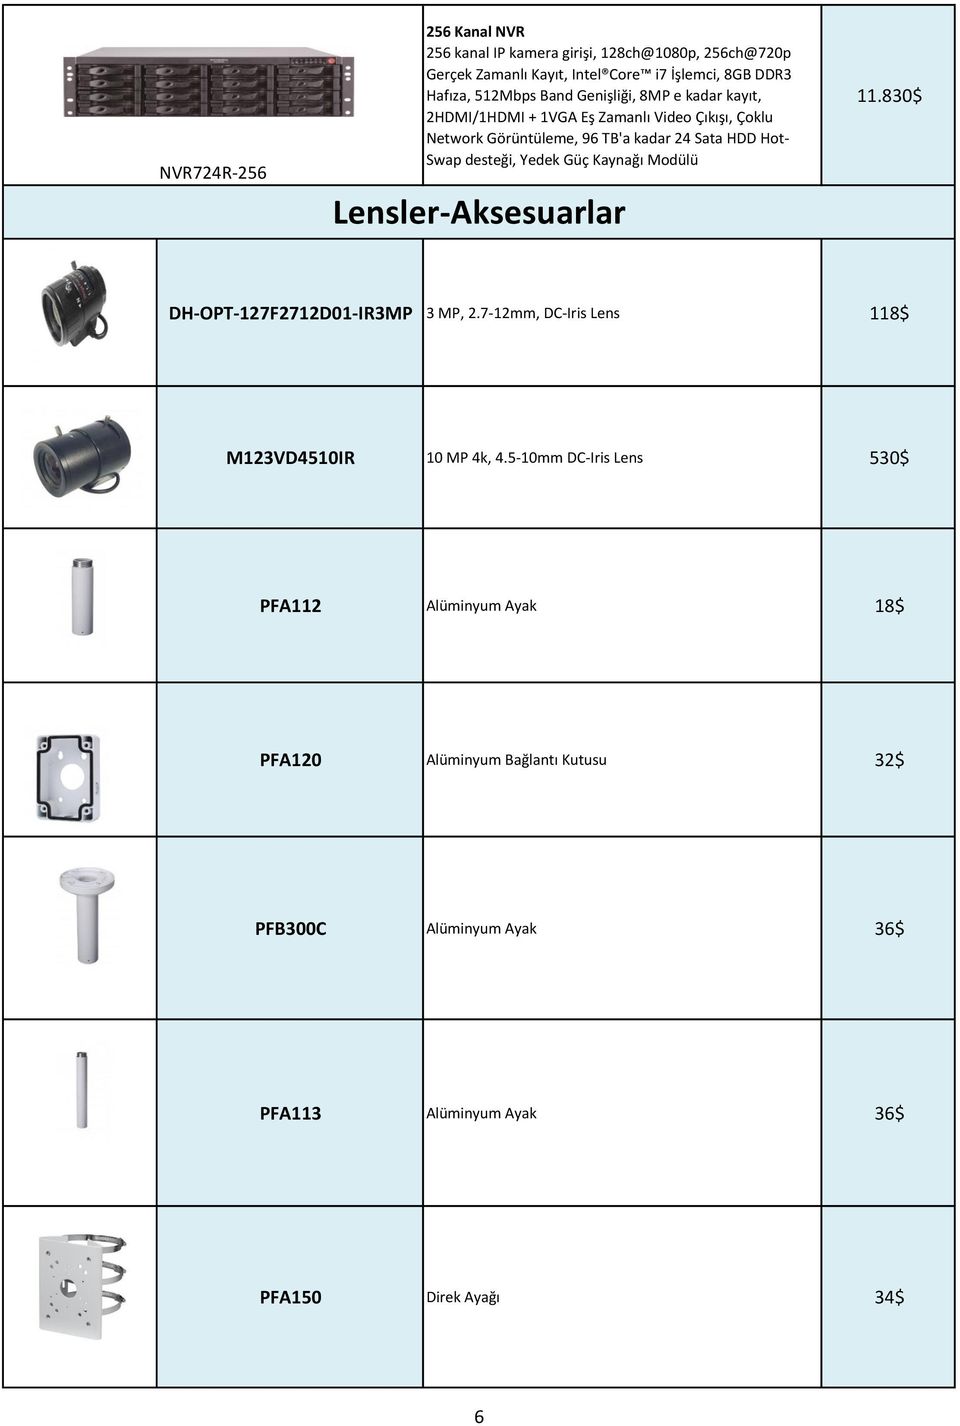 Yedek Güç Kaynağı Modülü Lensler-Aksesuarlar 11.830$ DH-OPT-127F2712D01-IR3MP 3 MP, 2.7-12mm, DC-Iris Lens 118$ M123VD4510IR 10 MP 4k, 4.